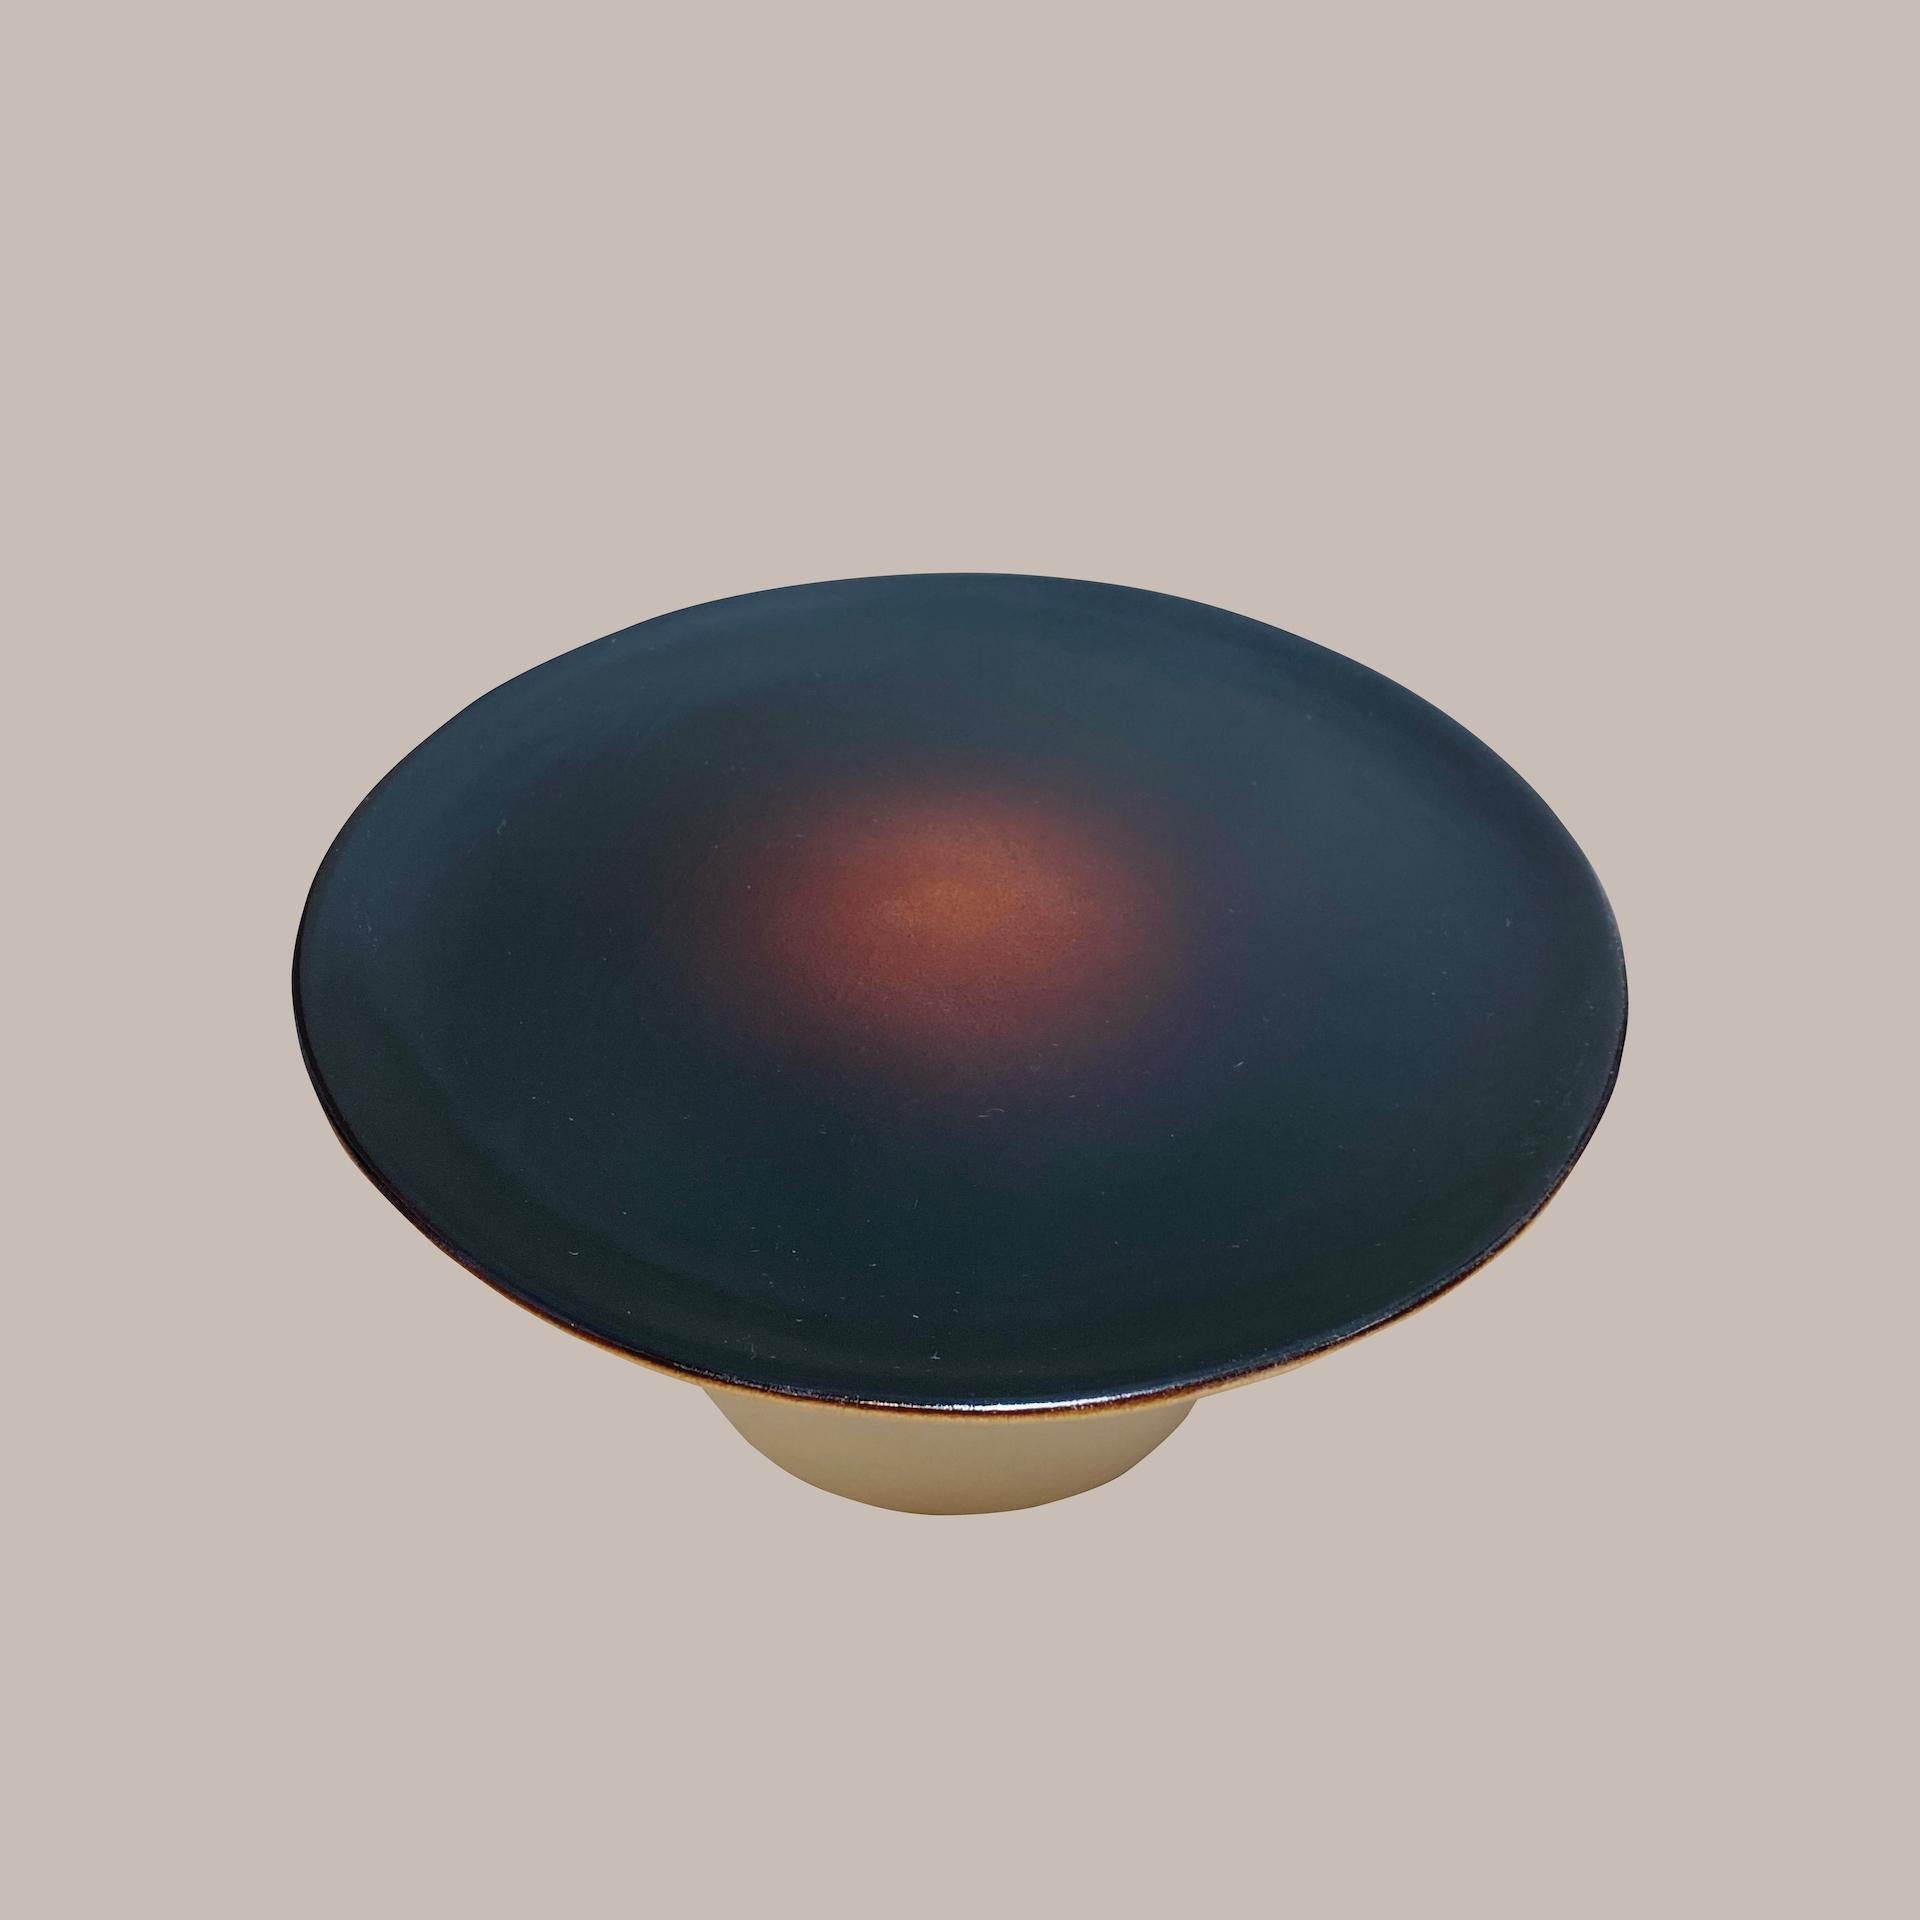 Ott another paradigmatic handmade ceramic high-plate by Studio Yoon Seok-hyeon
2019
Dimensions : L 18 x H 10 cm
MATERIAL : Ott (résine naturelle de l'arbre Ott), porcelaine
650g

Il est possible de personnaliser différentes couleurs dans la gamme de